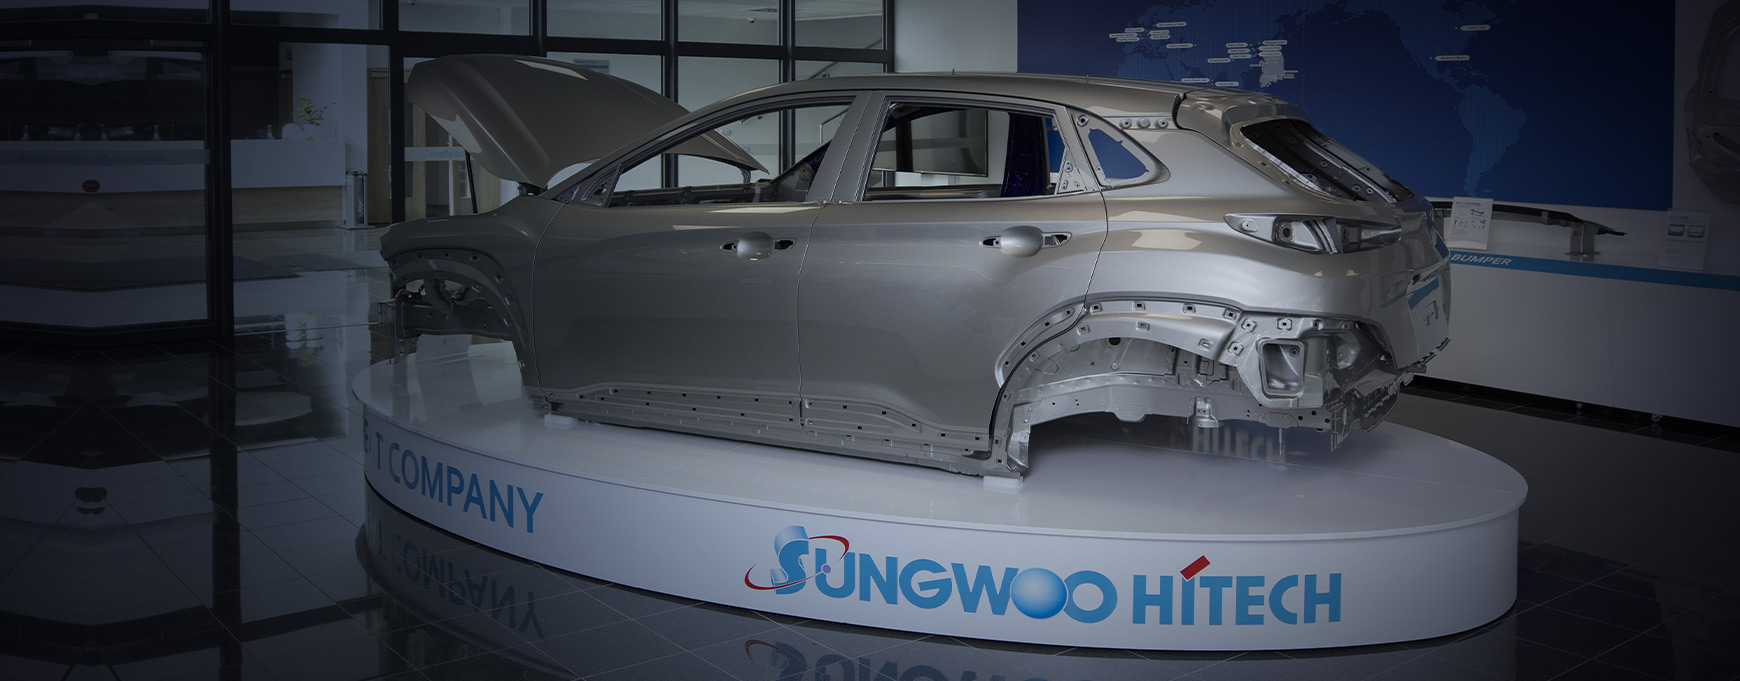 SUNGWOO HITECH s.r.o. je hlavním dodavatelem komponent pro společnosti Hyundai Motors v Nošovicích a KIA Motors v Žilině